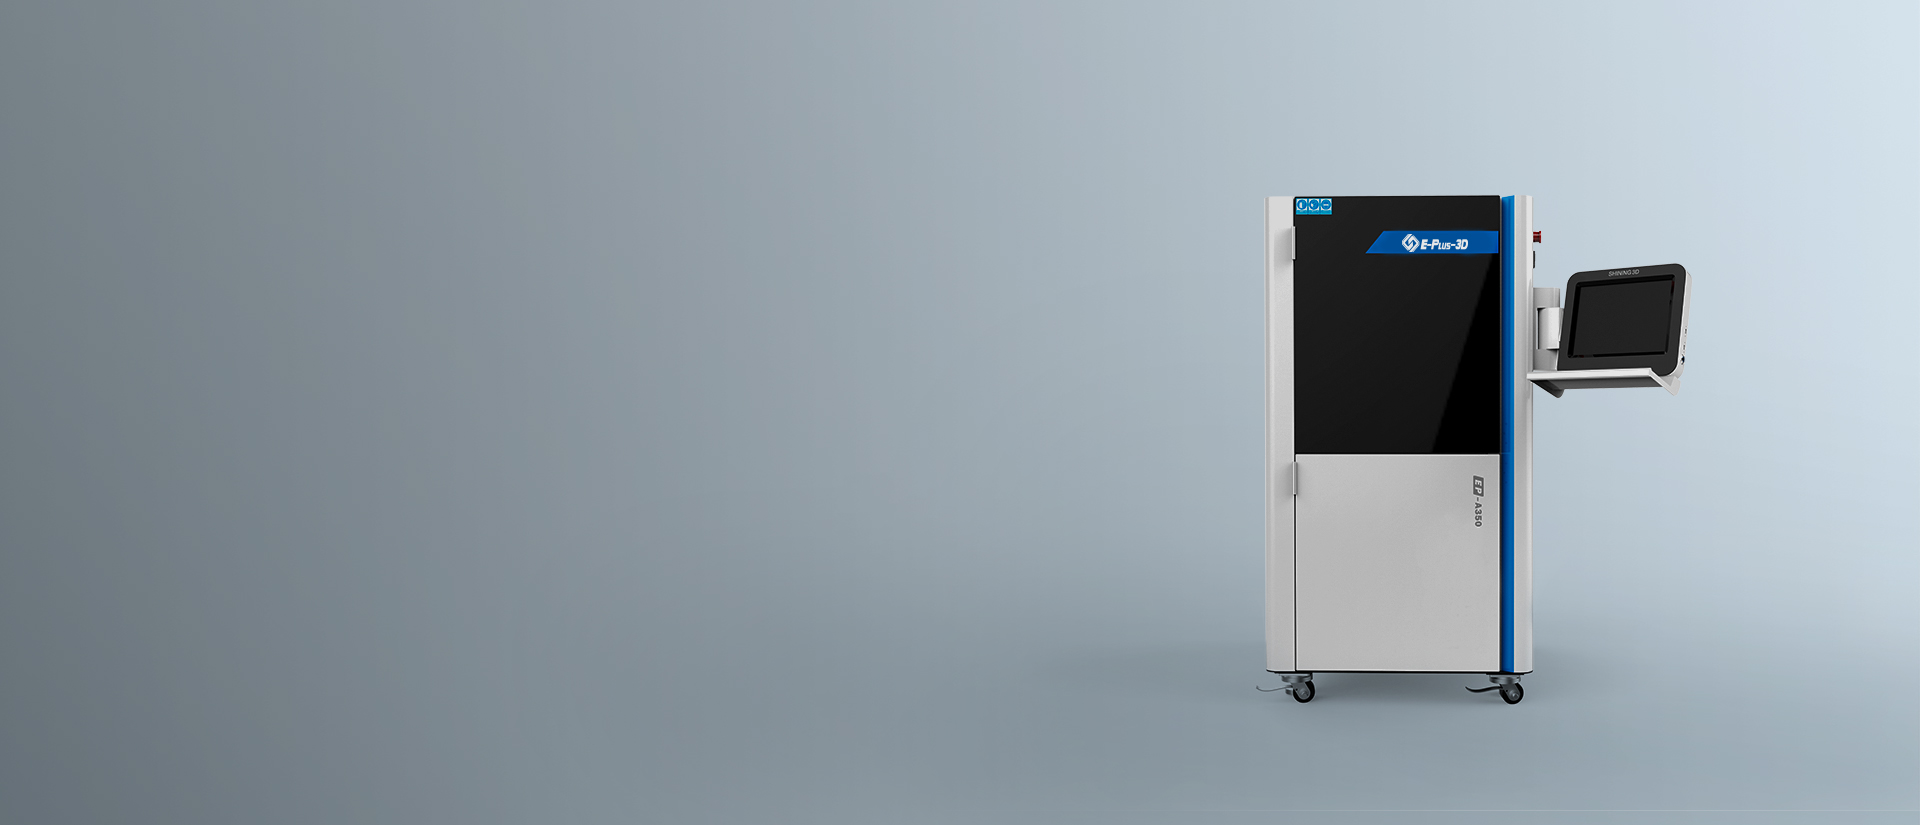 EP-A350 Resin 3D Printer